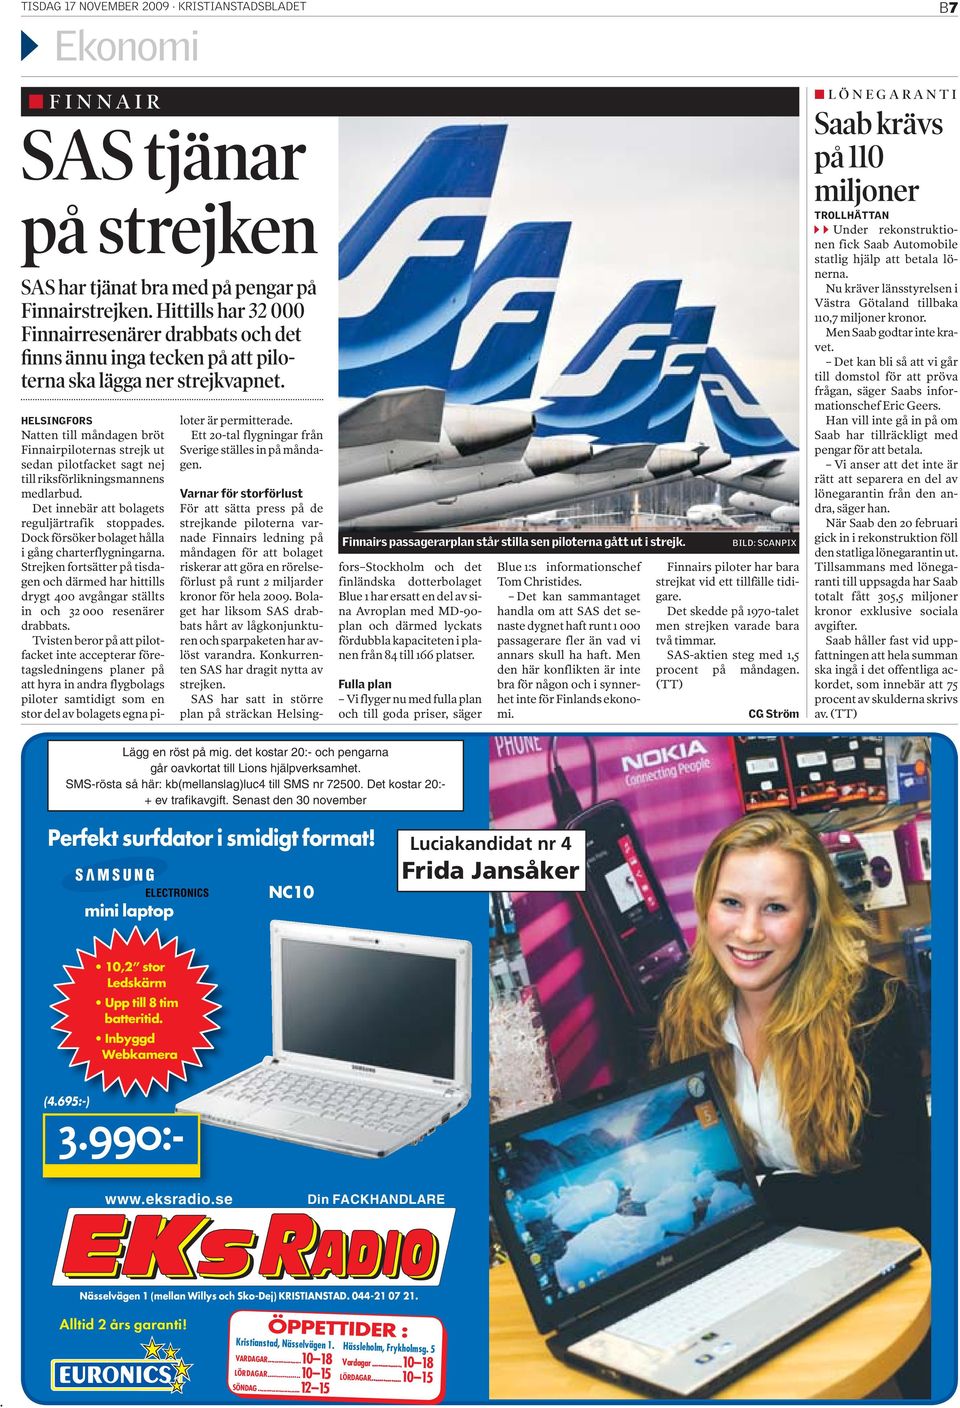 HELSINGFORS Natten till måndagen bröt Finnairpiloternas strejk ut sedan pilotfacket sagt nej till riksförlikningsmannens medlarbud. Det innebär att bolagets reguljärtrafik stoppades.